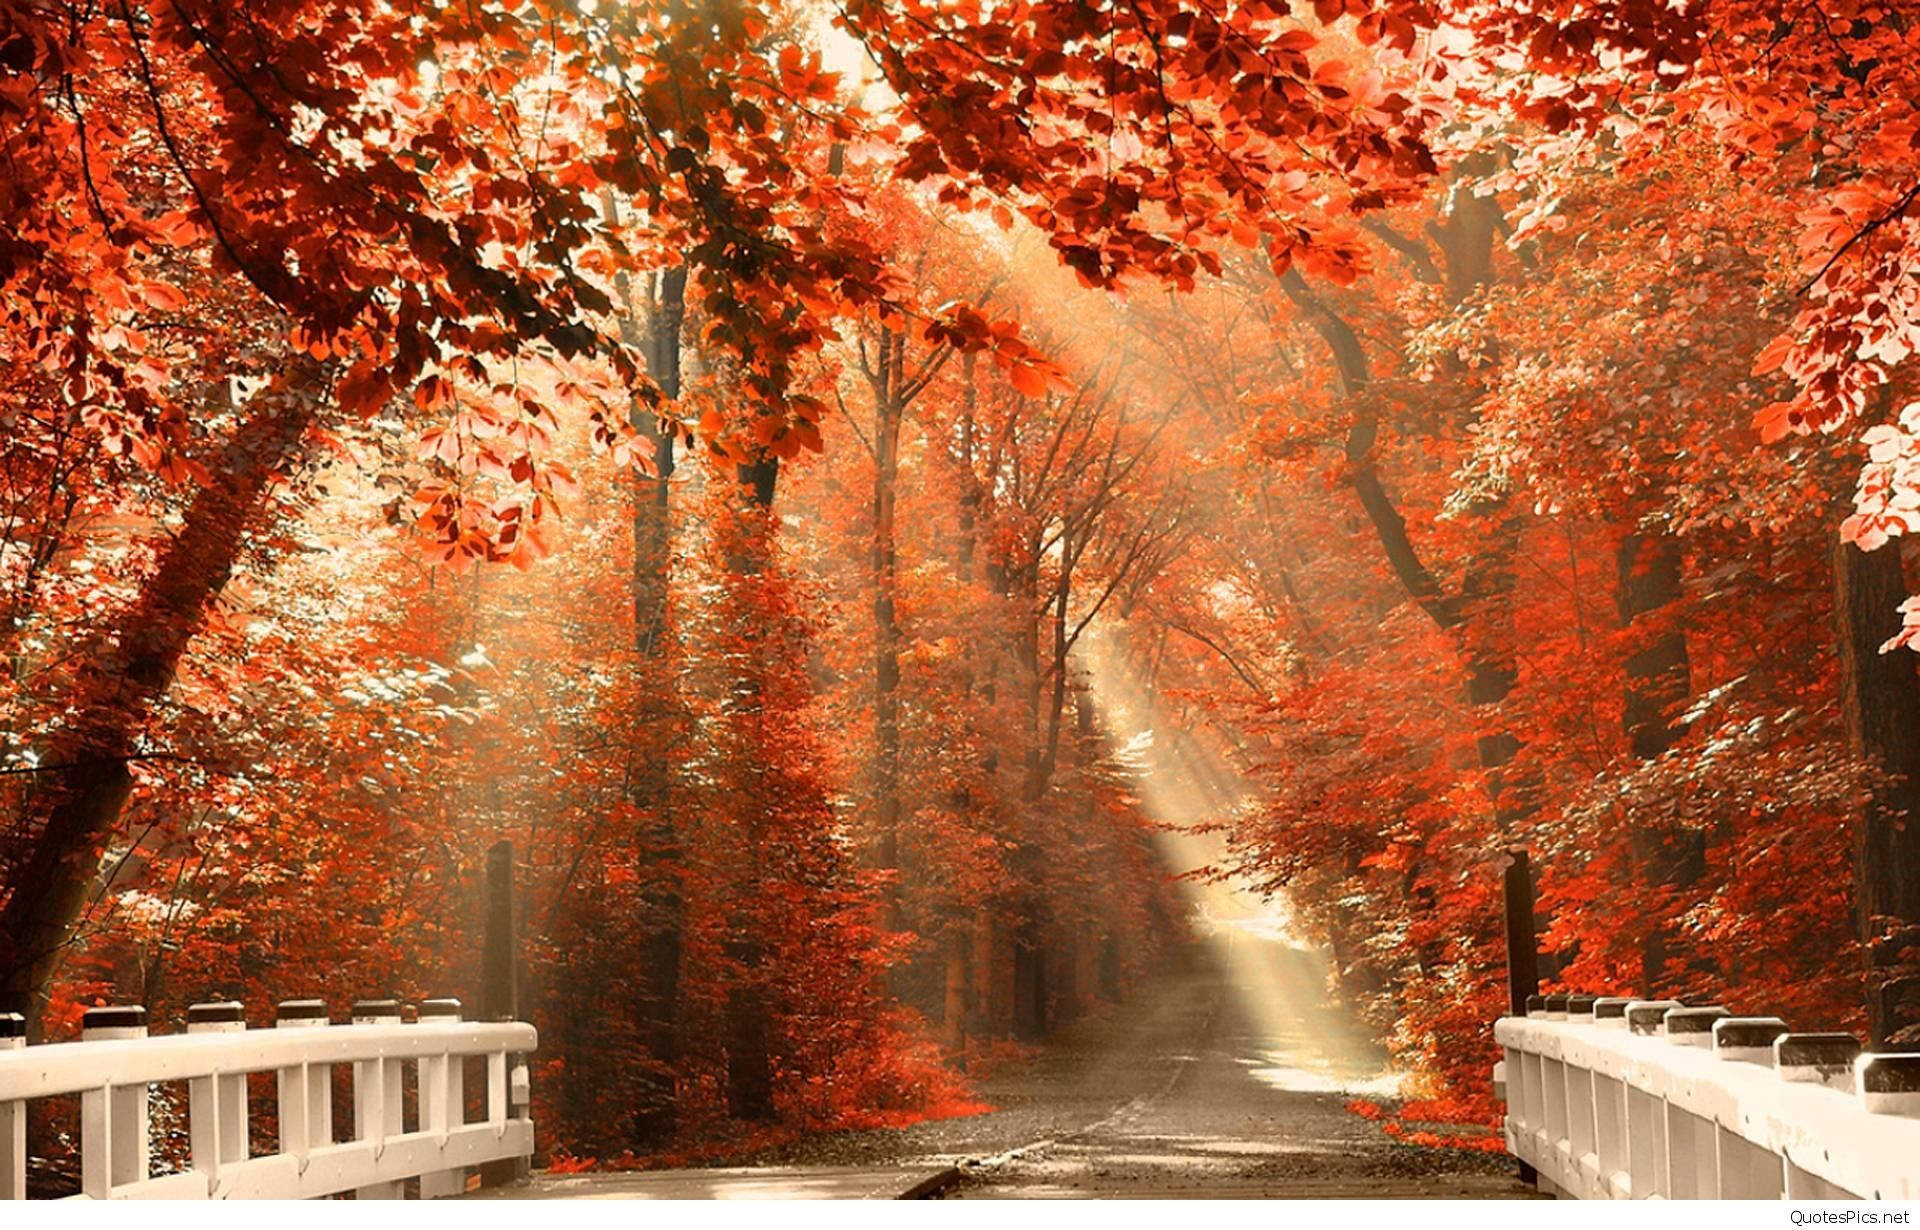 Autumn Season White Bridge